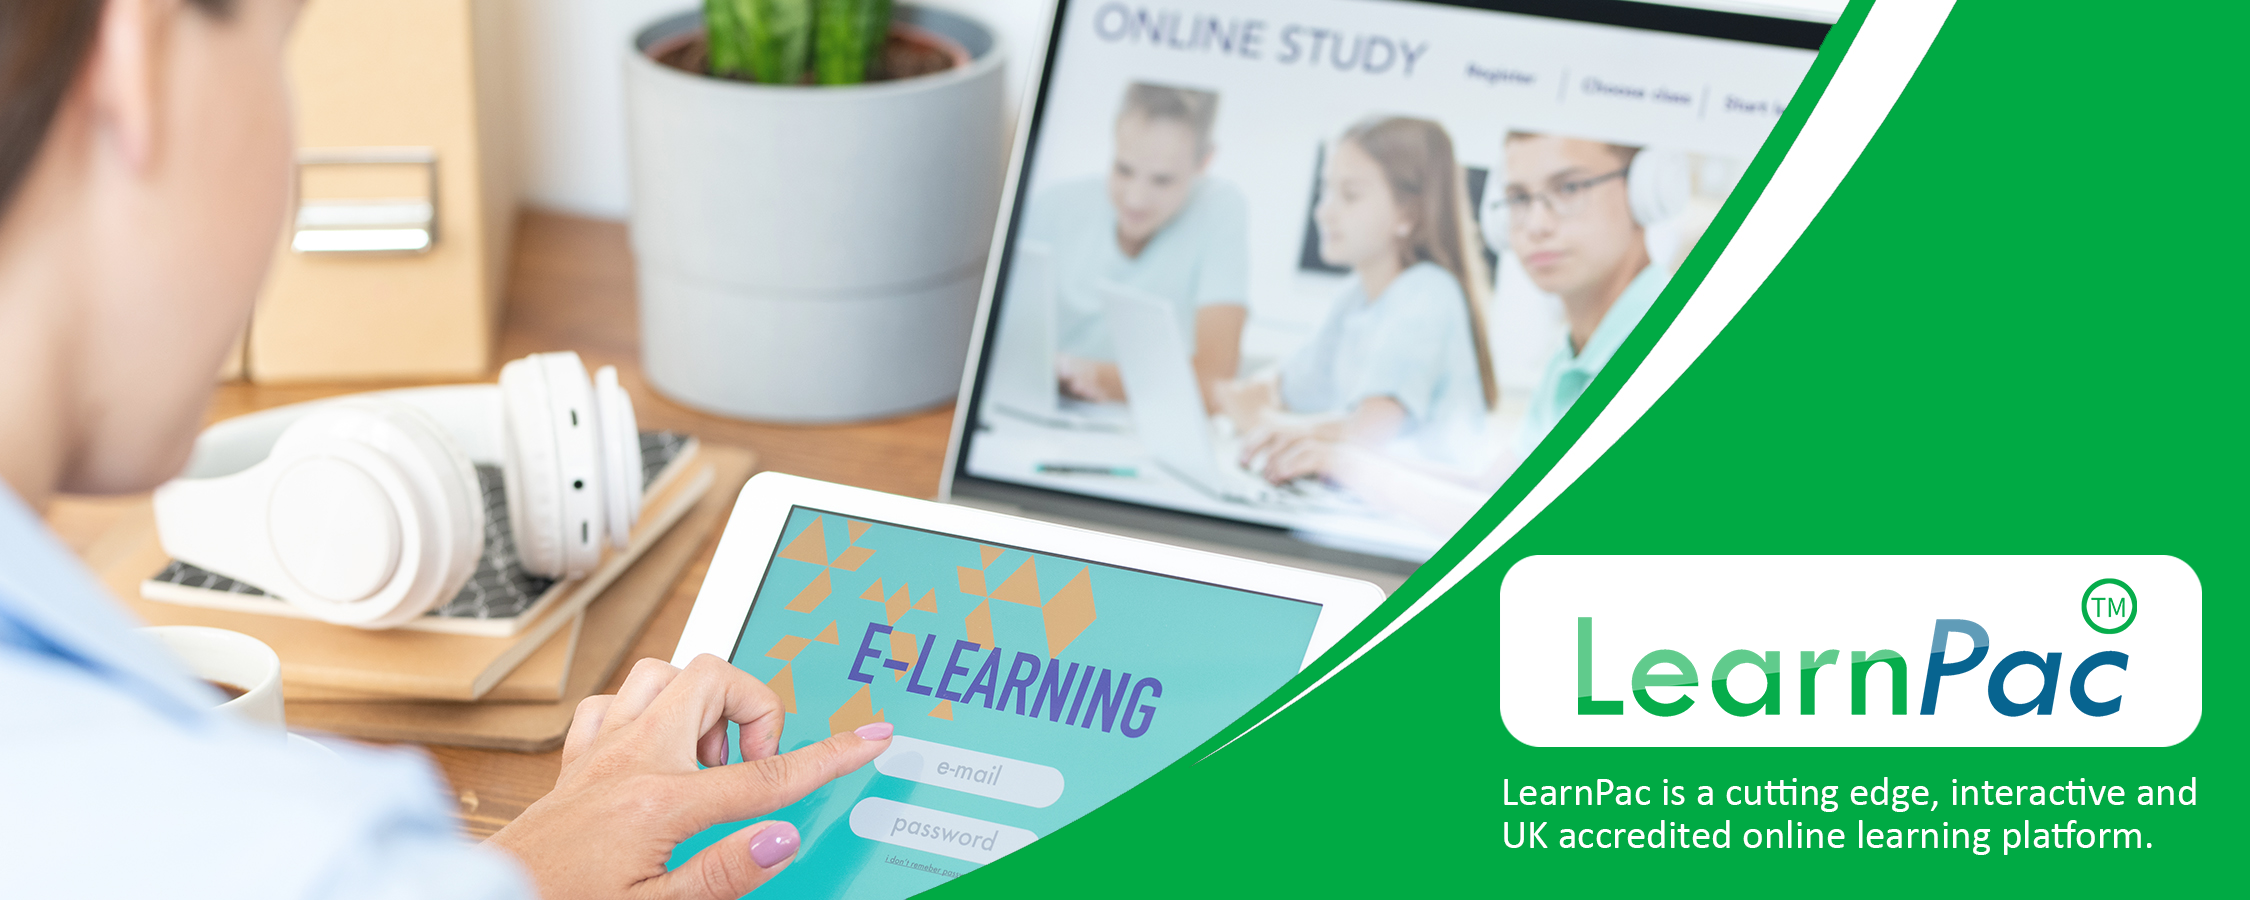 Emotional Intelligence Training - Online Learning Courses - E-Learning Courses - LearnPac Systems UK -